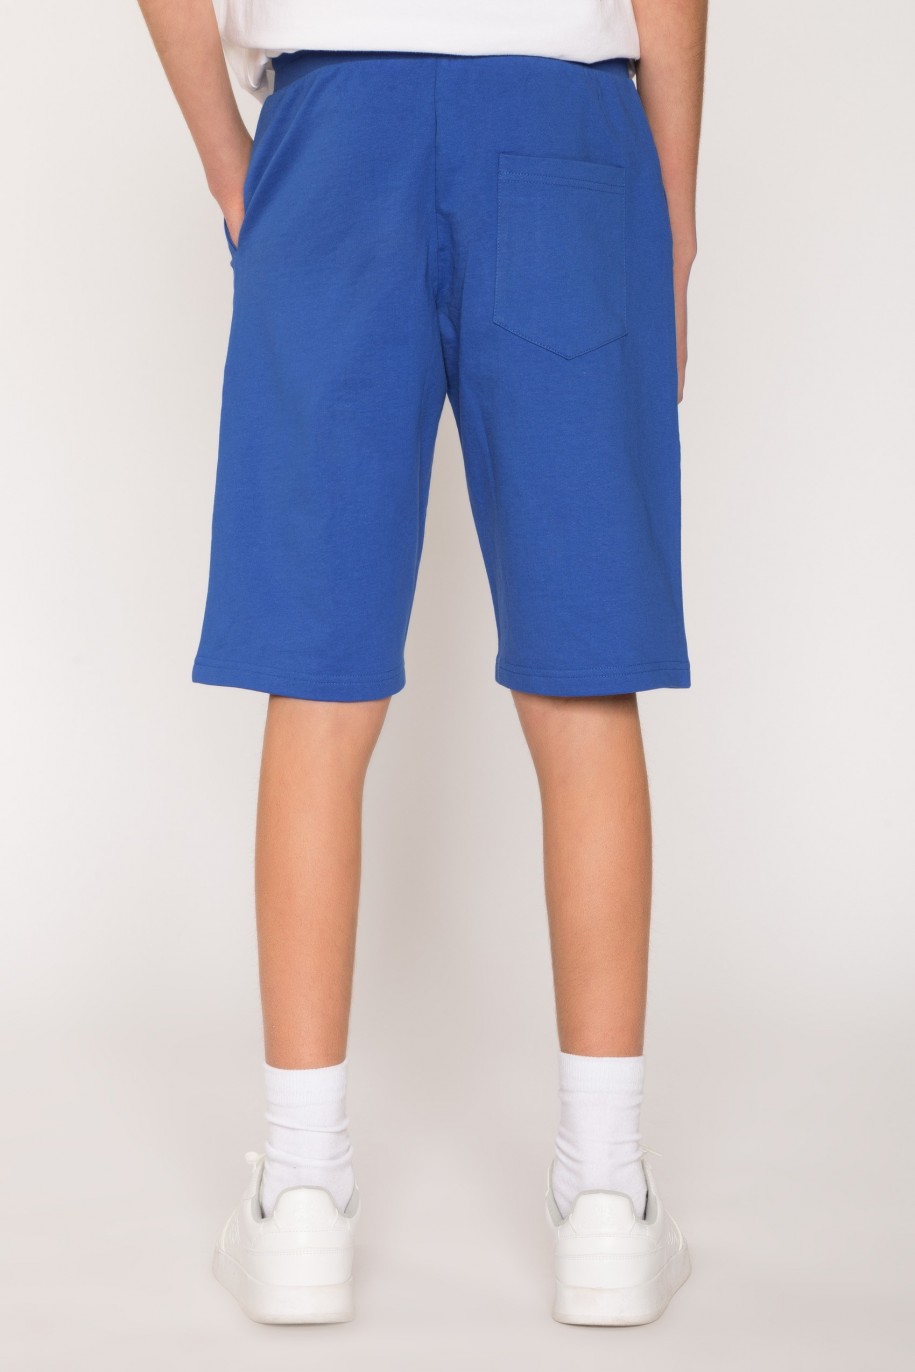 Niebieskie sportowe szorty dla chłopaka z nadrukami na nogawkach - 27067